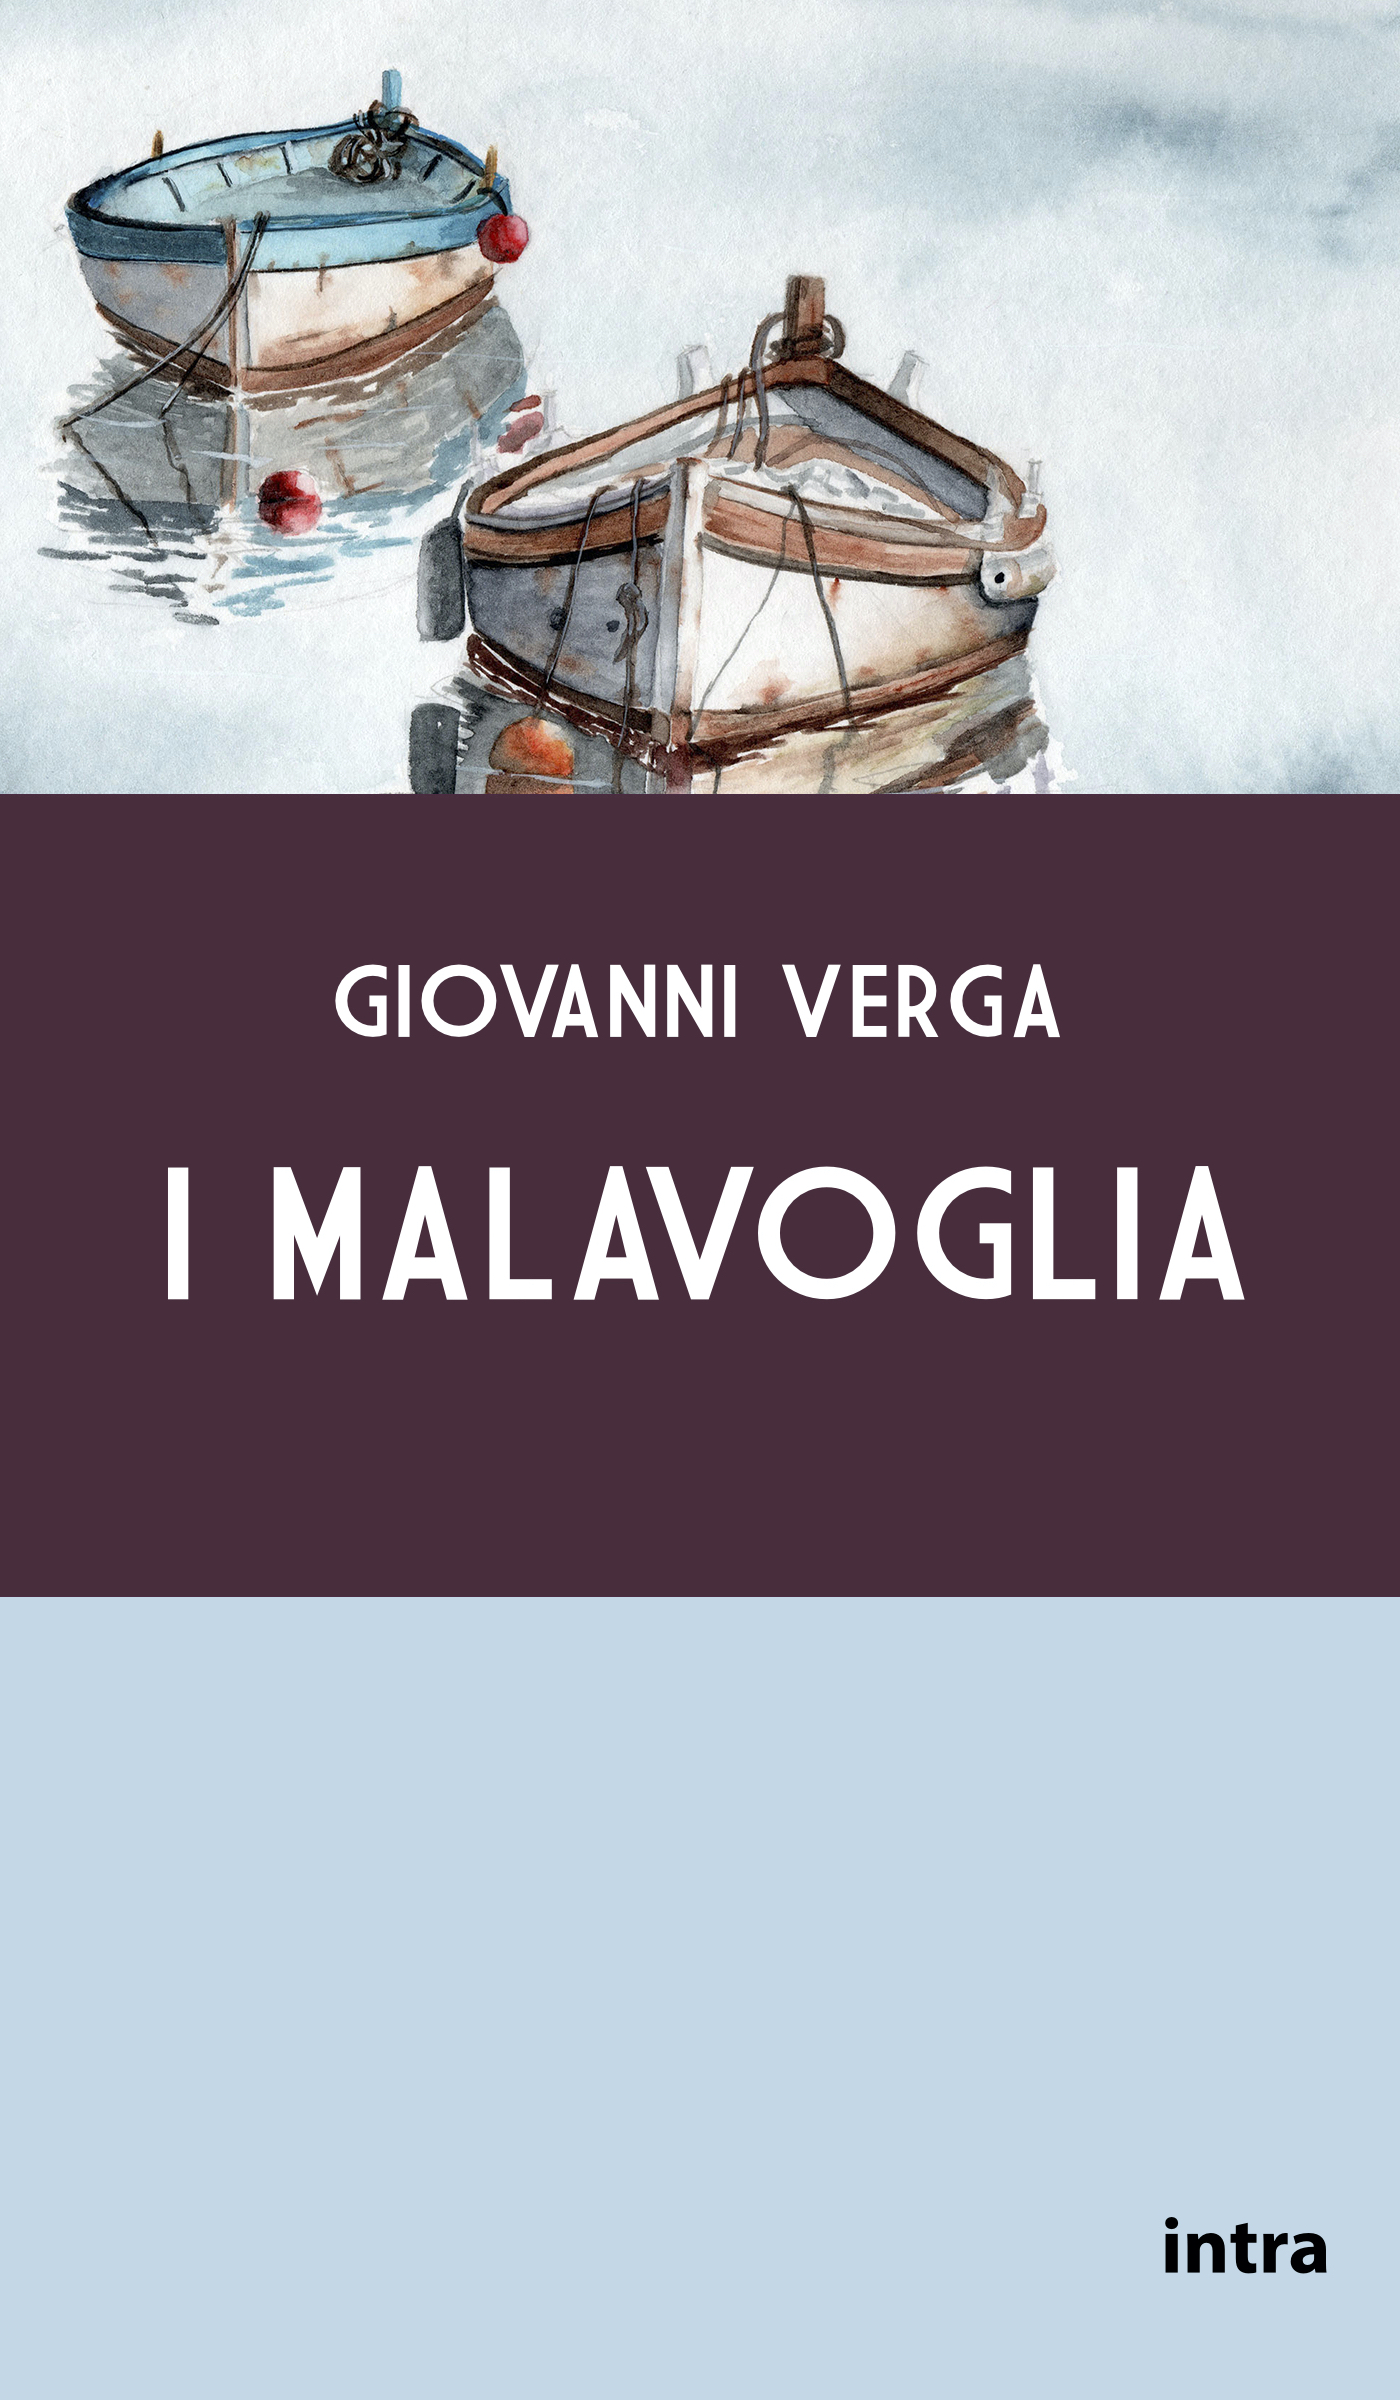 I Malavoglia - Giovanni Verga - E-book - BookBeat